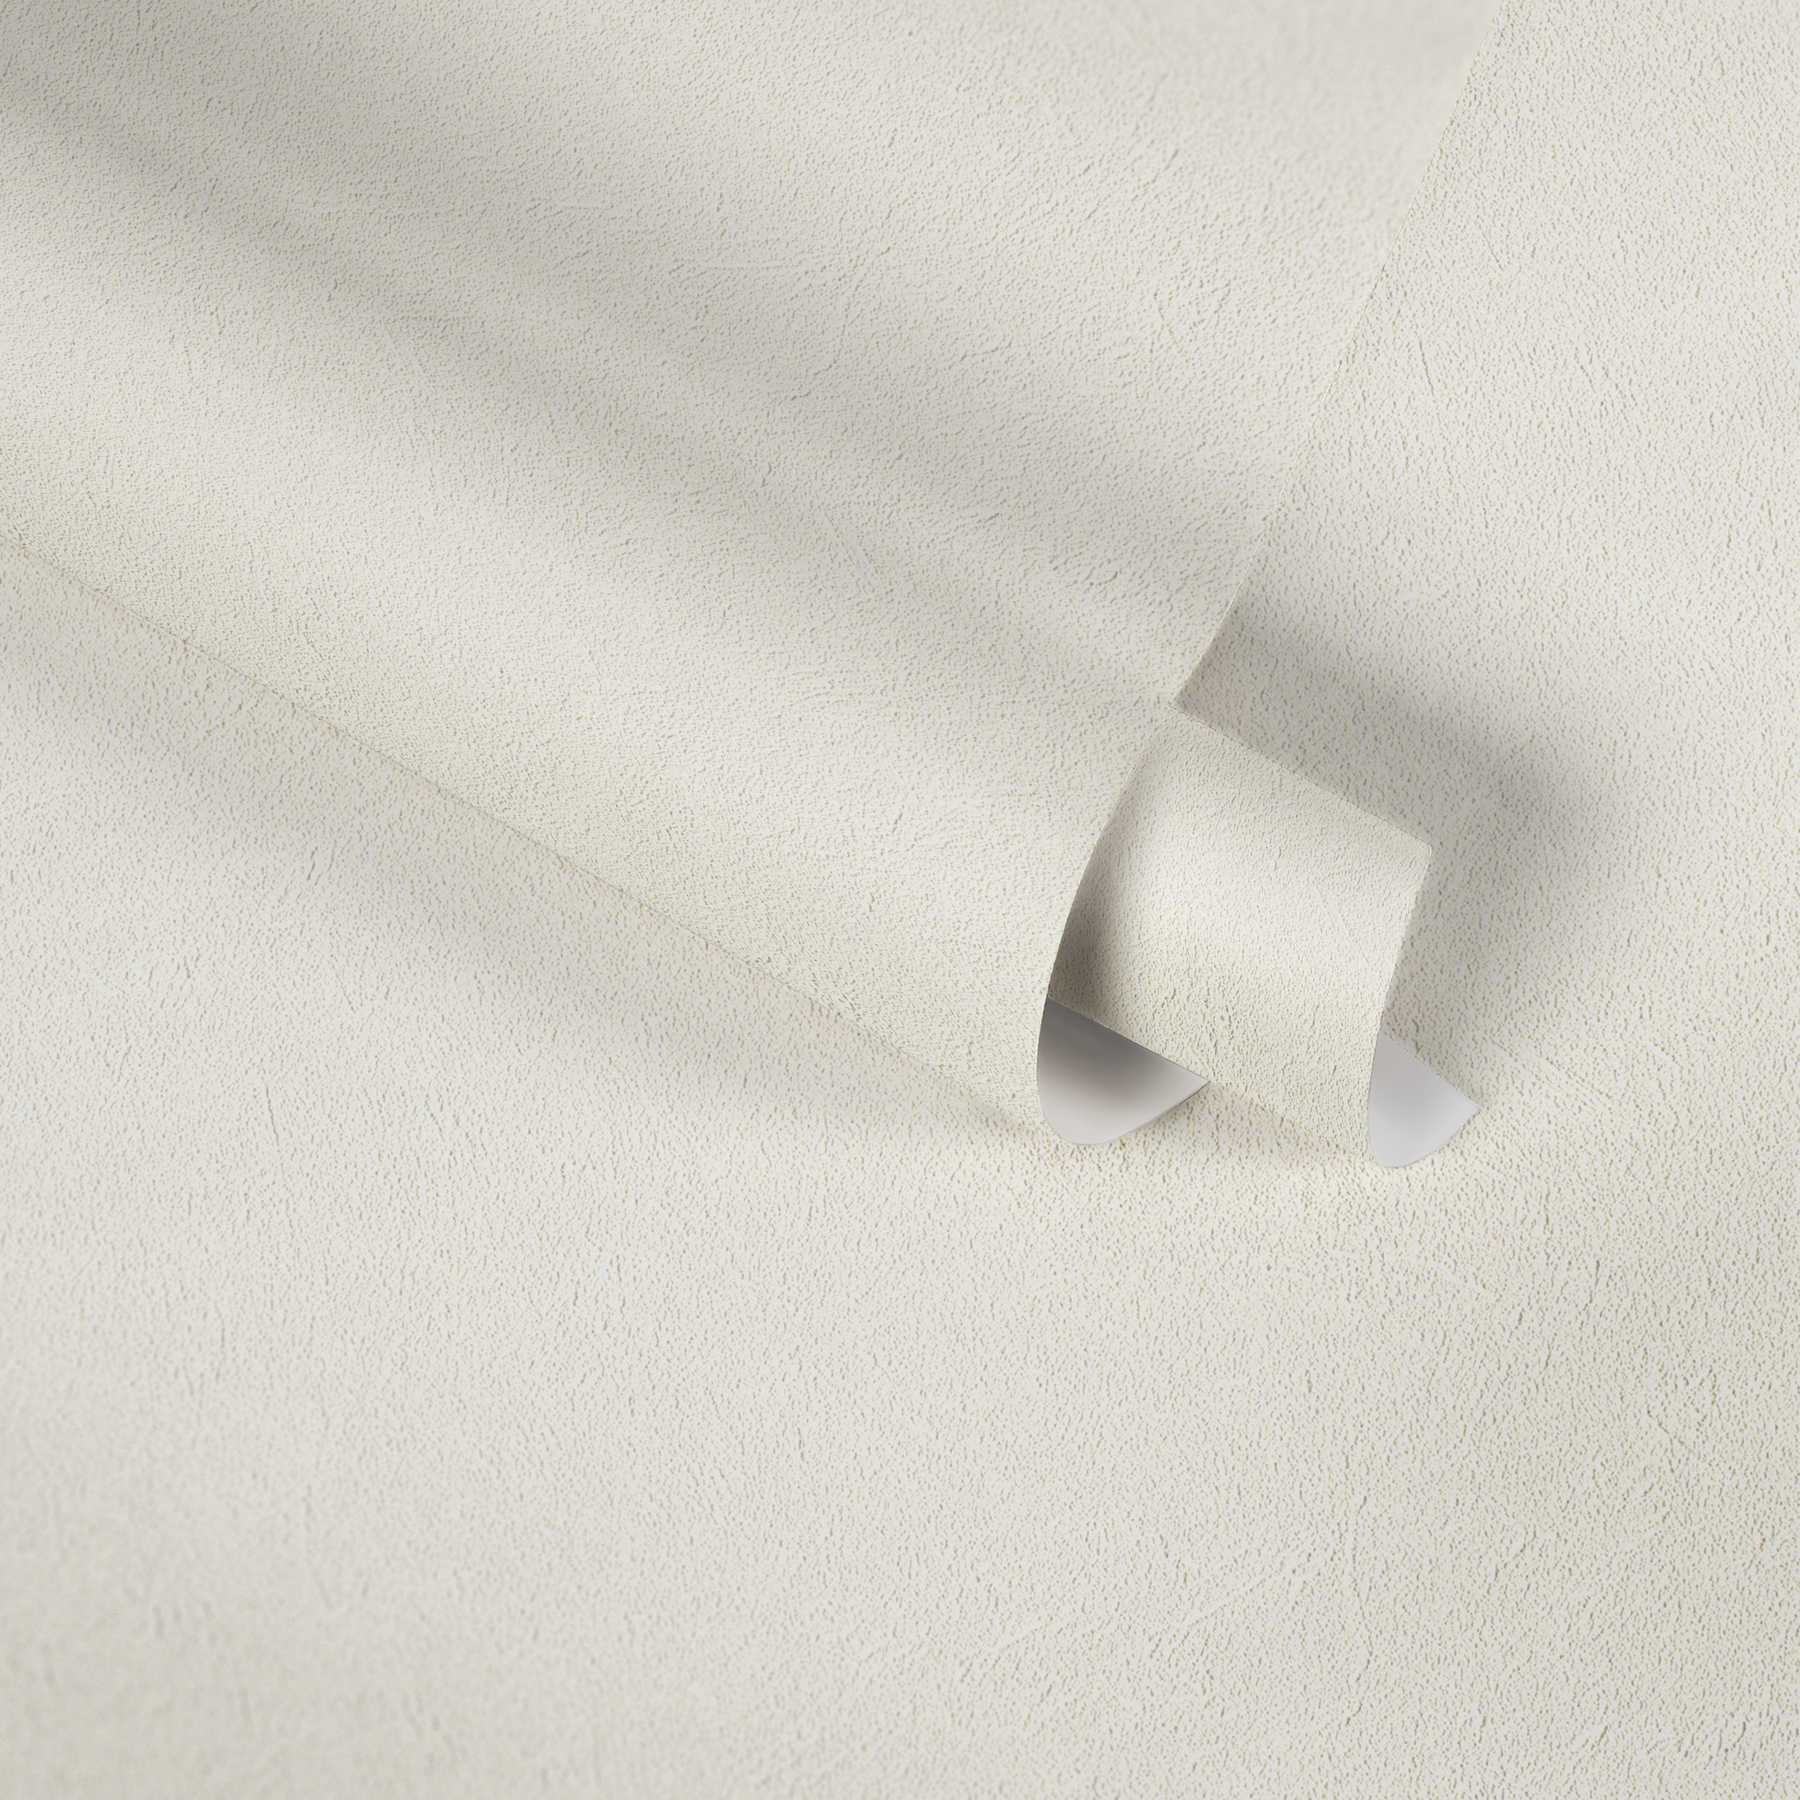             Papier peint uni crème-blanc avec un design structuré discret
        